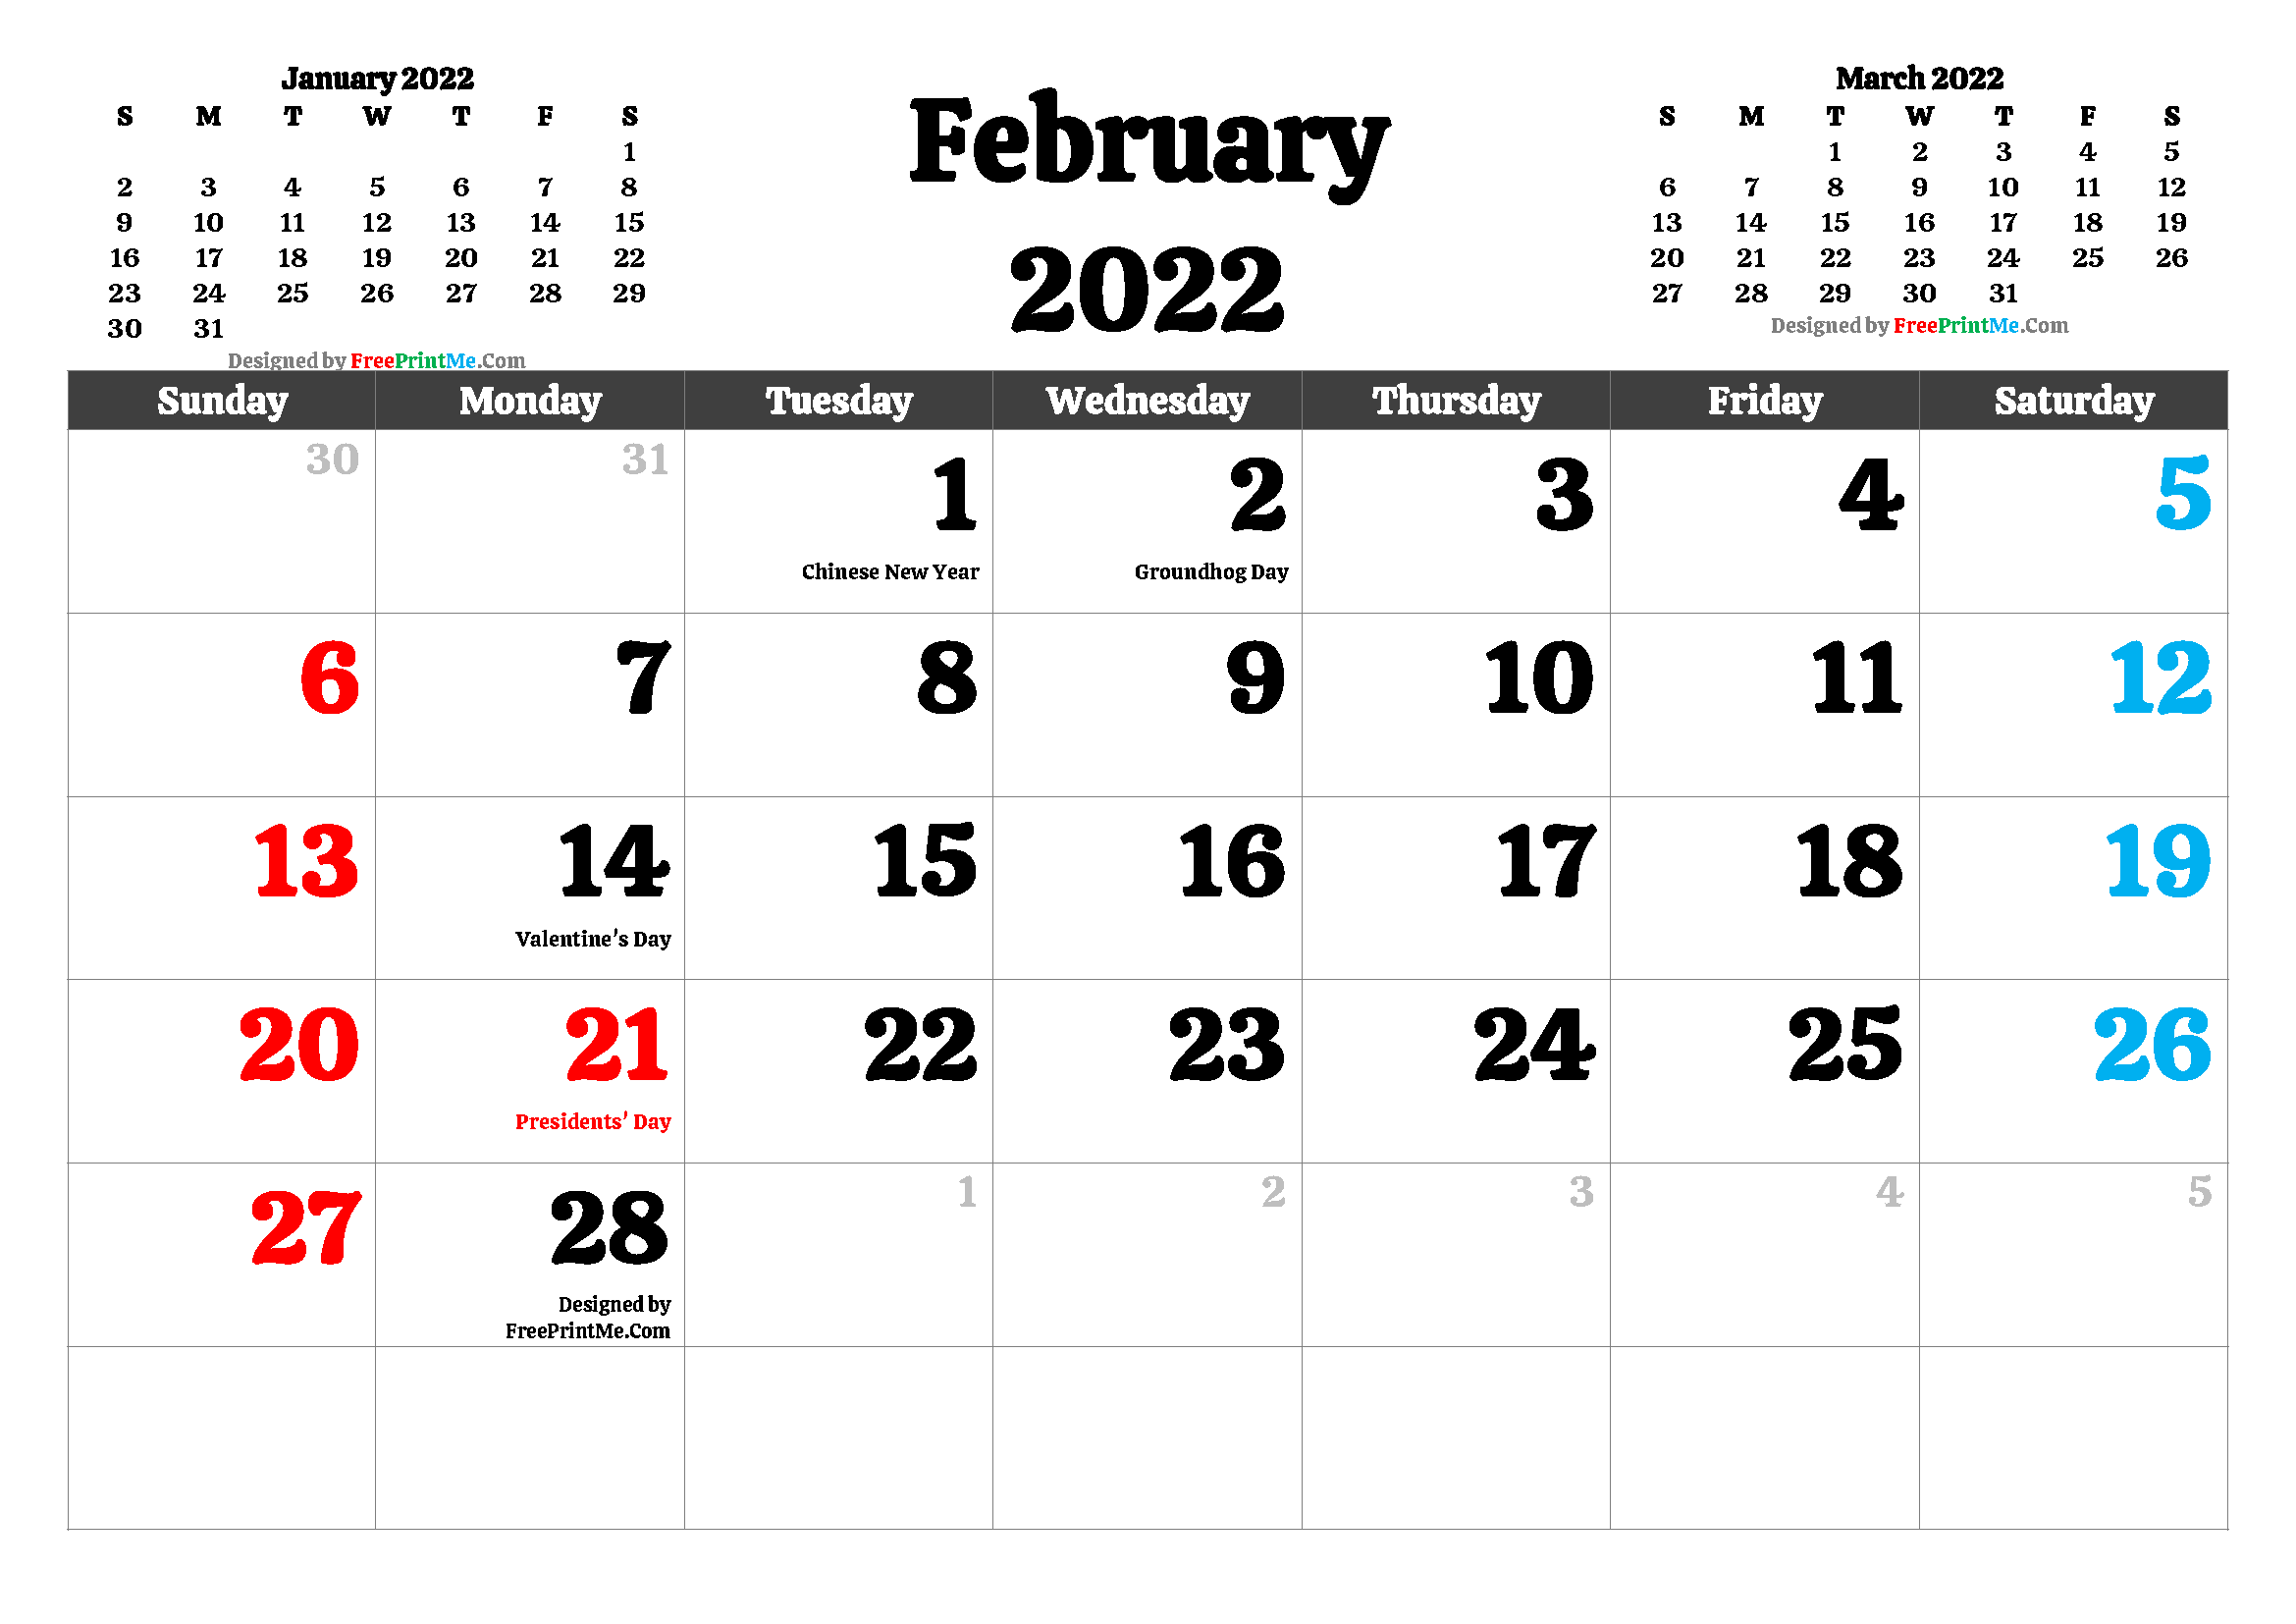 February 2022 Calendar Holidays Free Printable February 2022 Calendar Pdf And Image